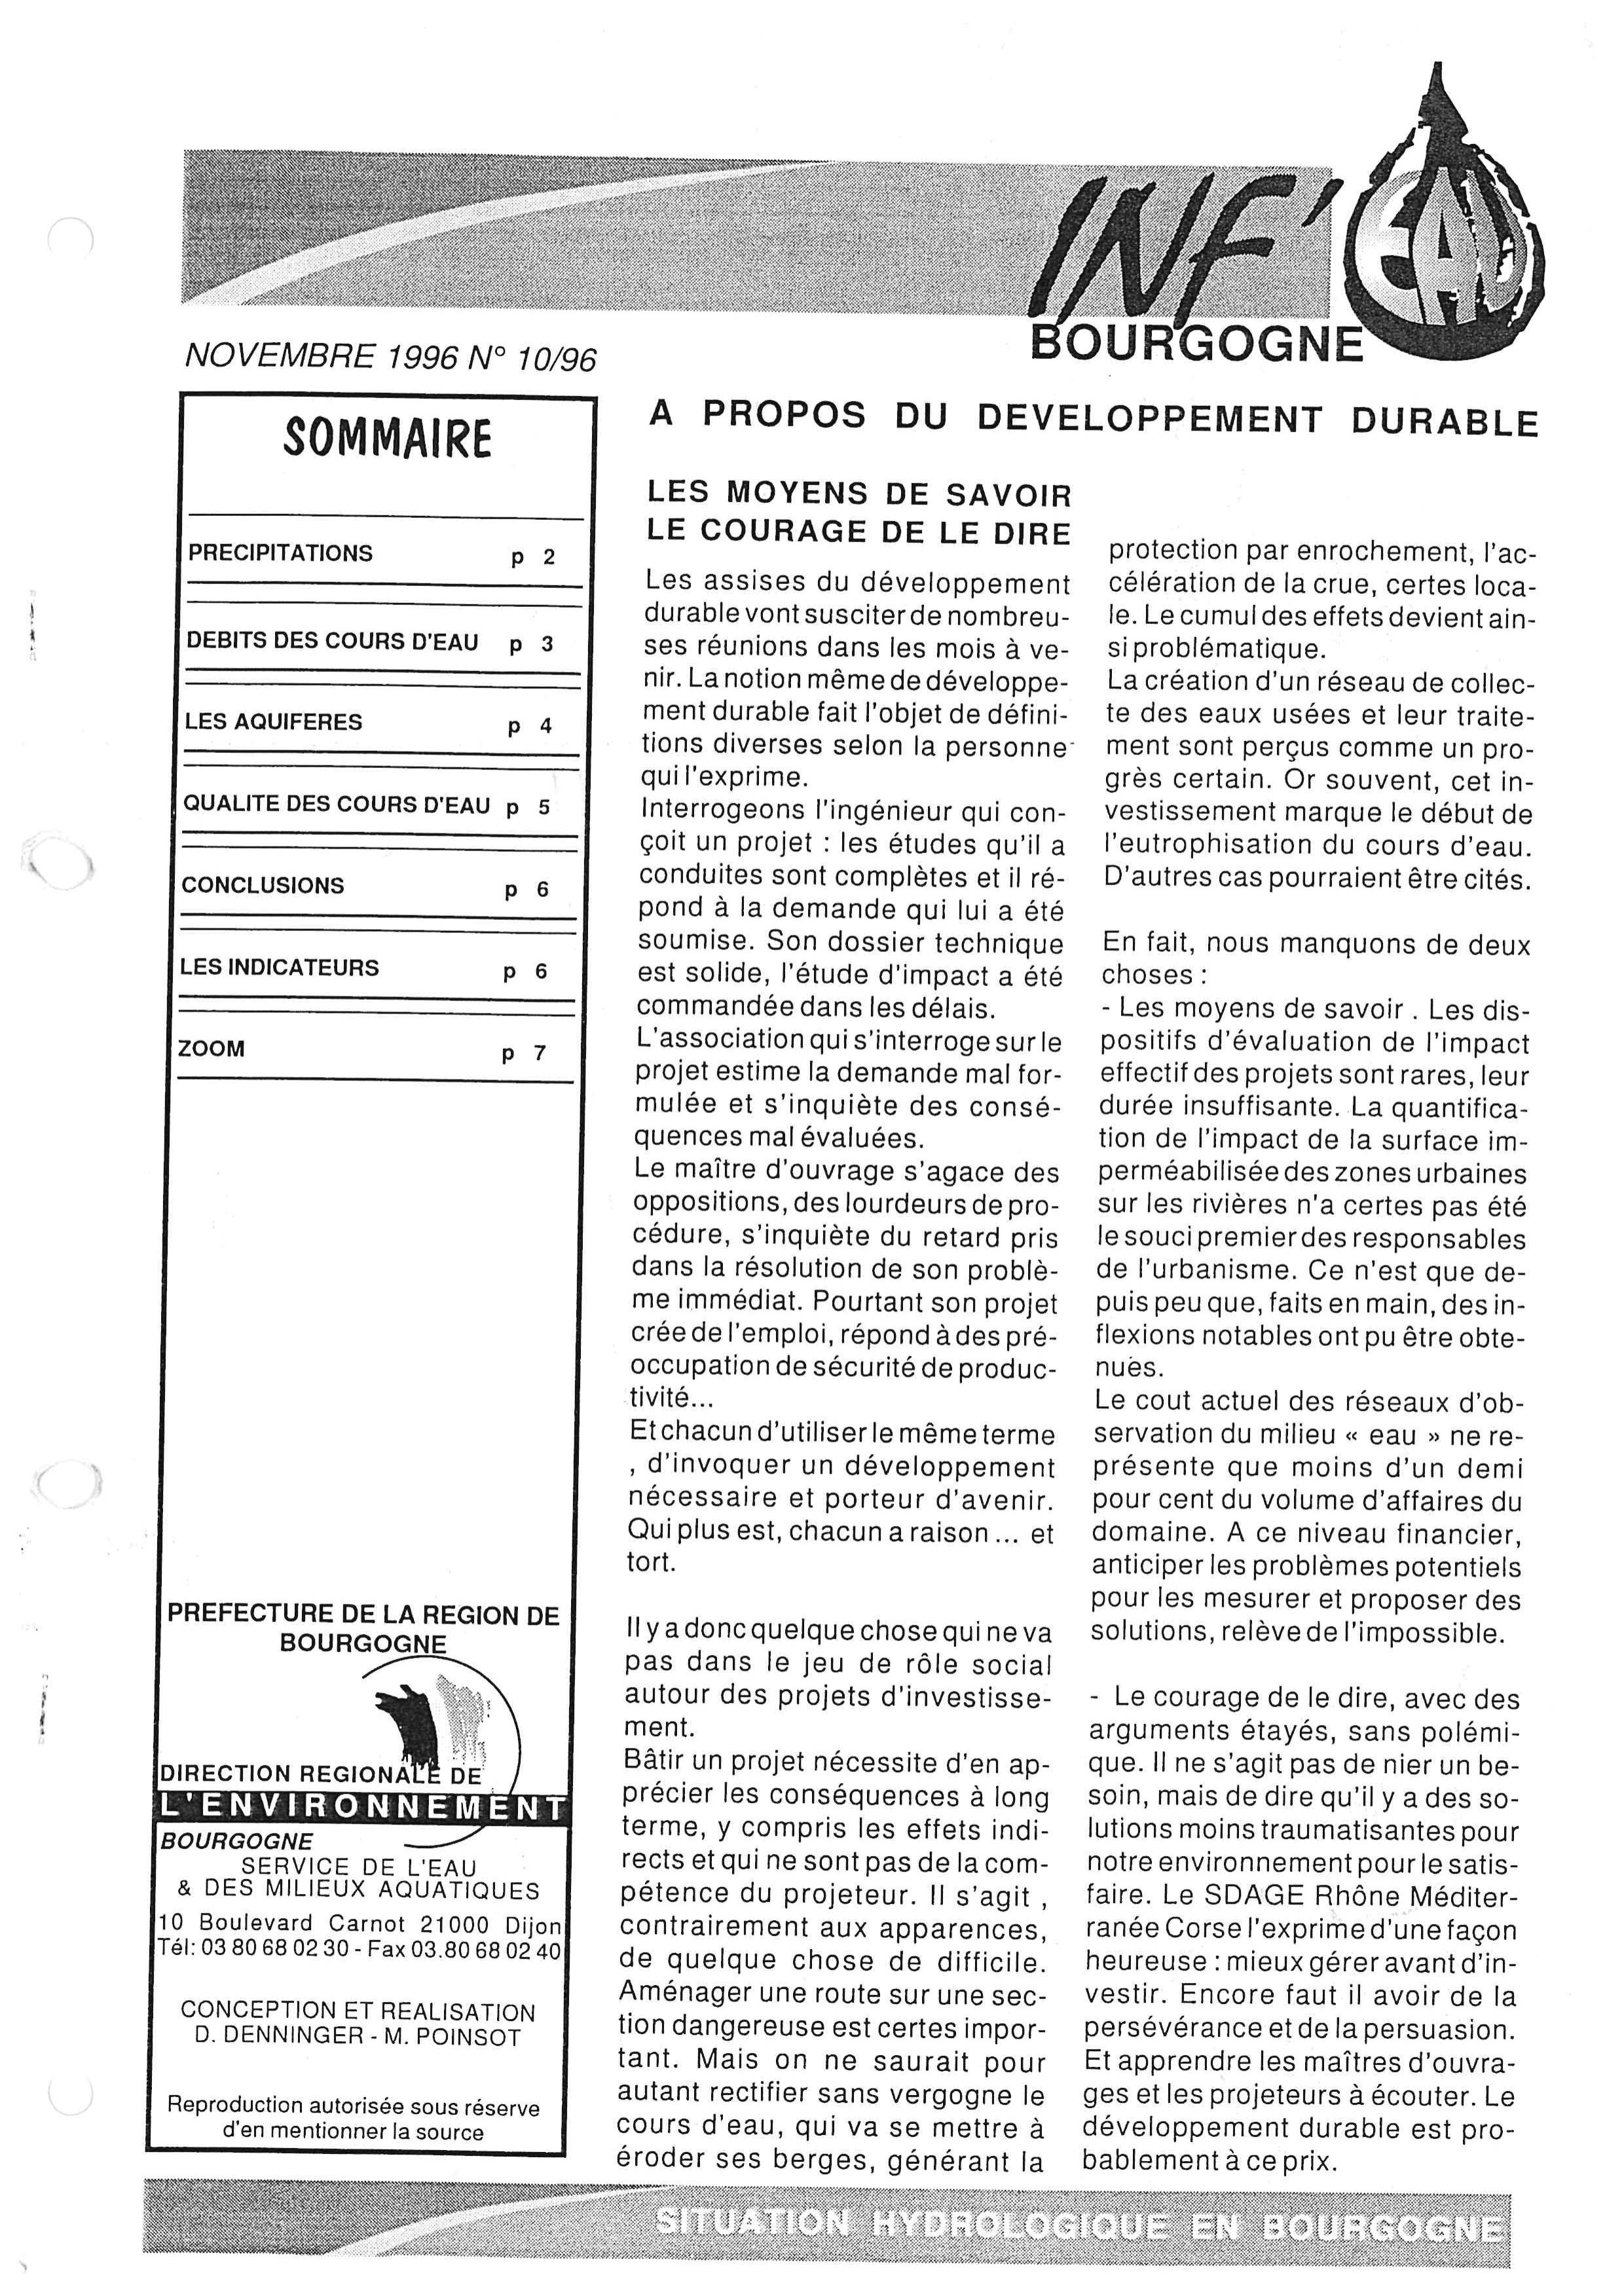 Bulletin hydrologique du mois de novembre 1996